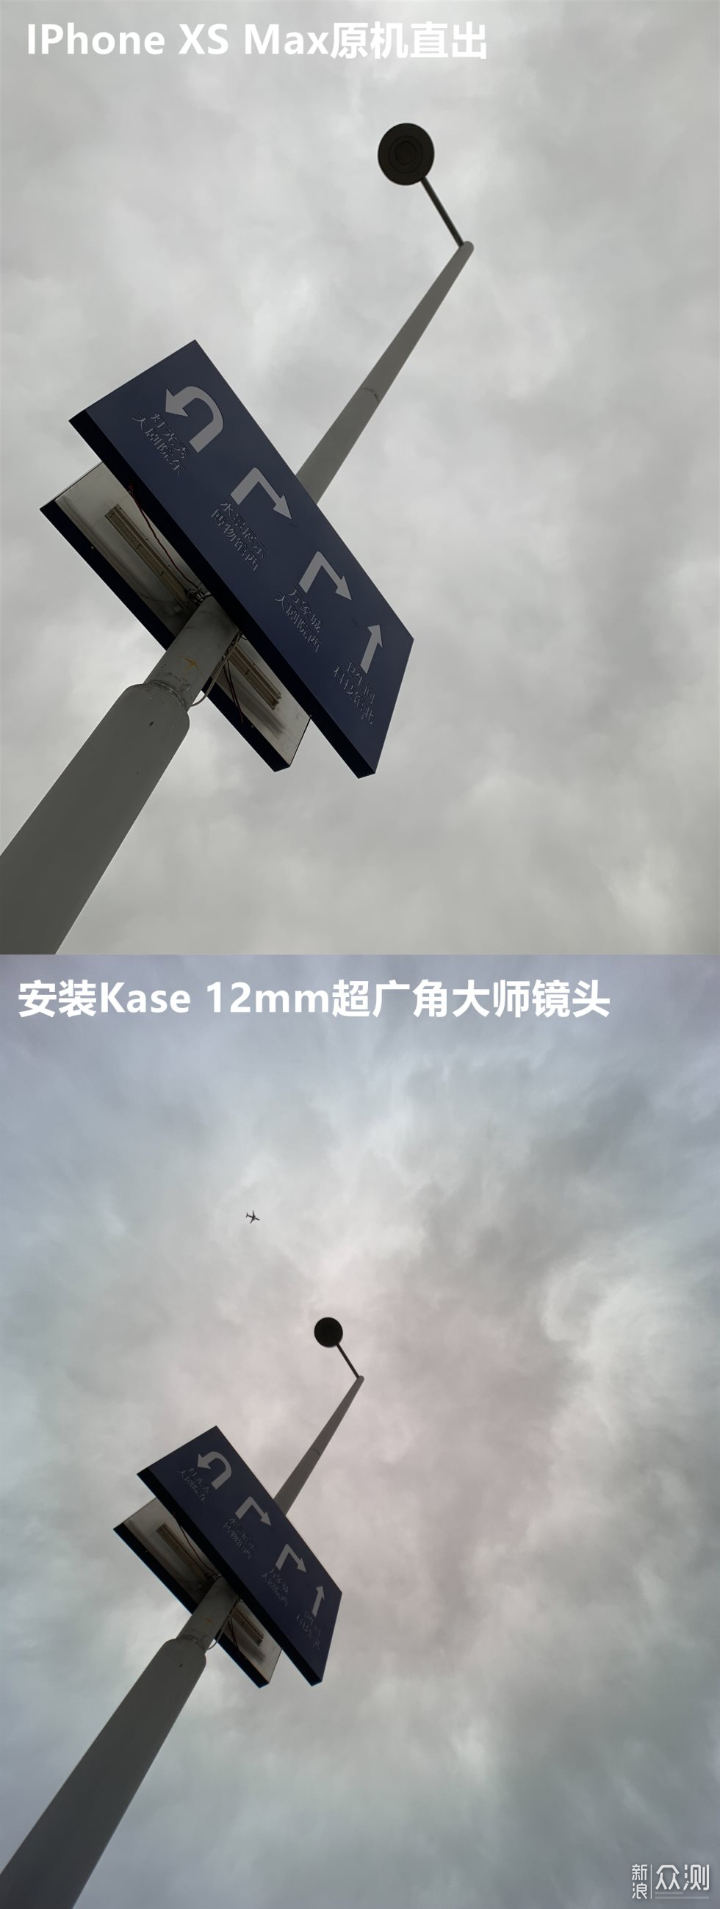 比IPhone11拍照更广Kase 12mm 超广角手机镜头_新浪众测